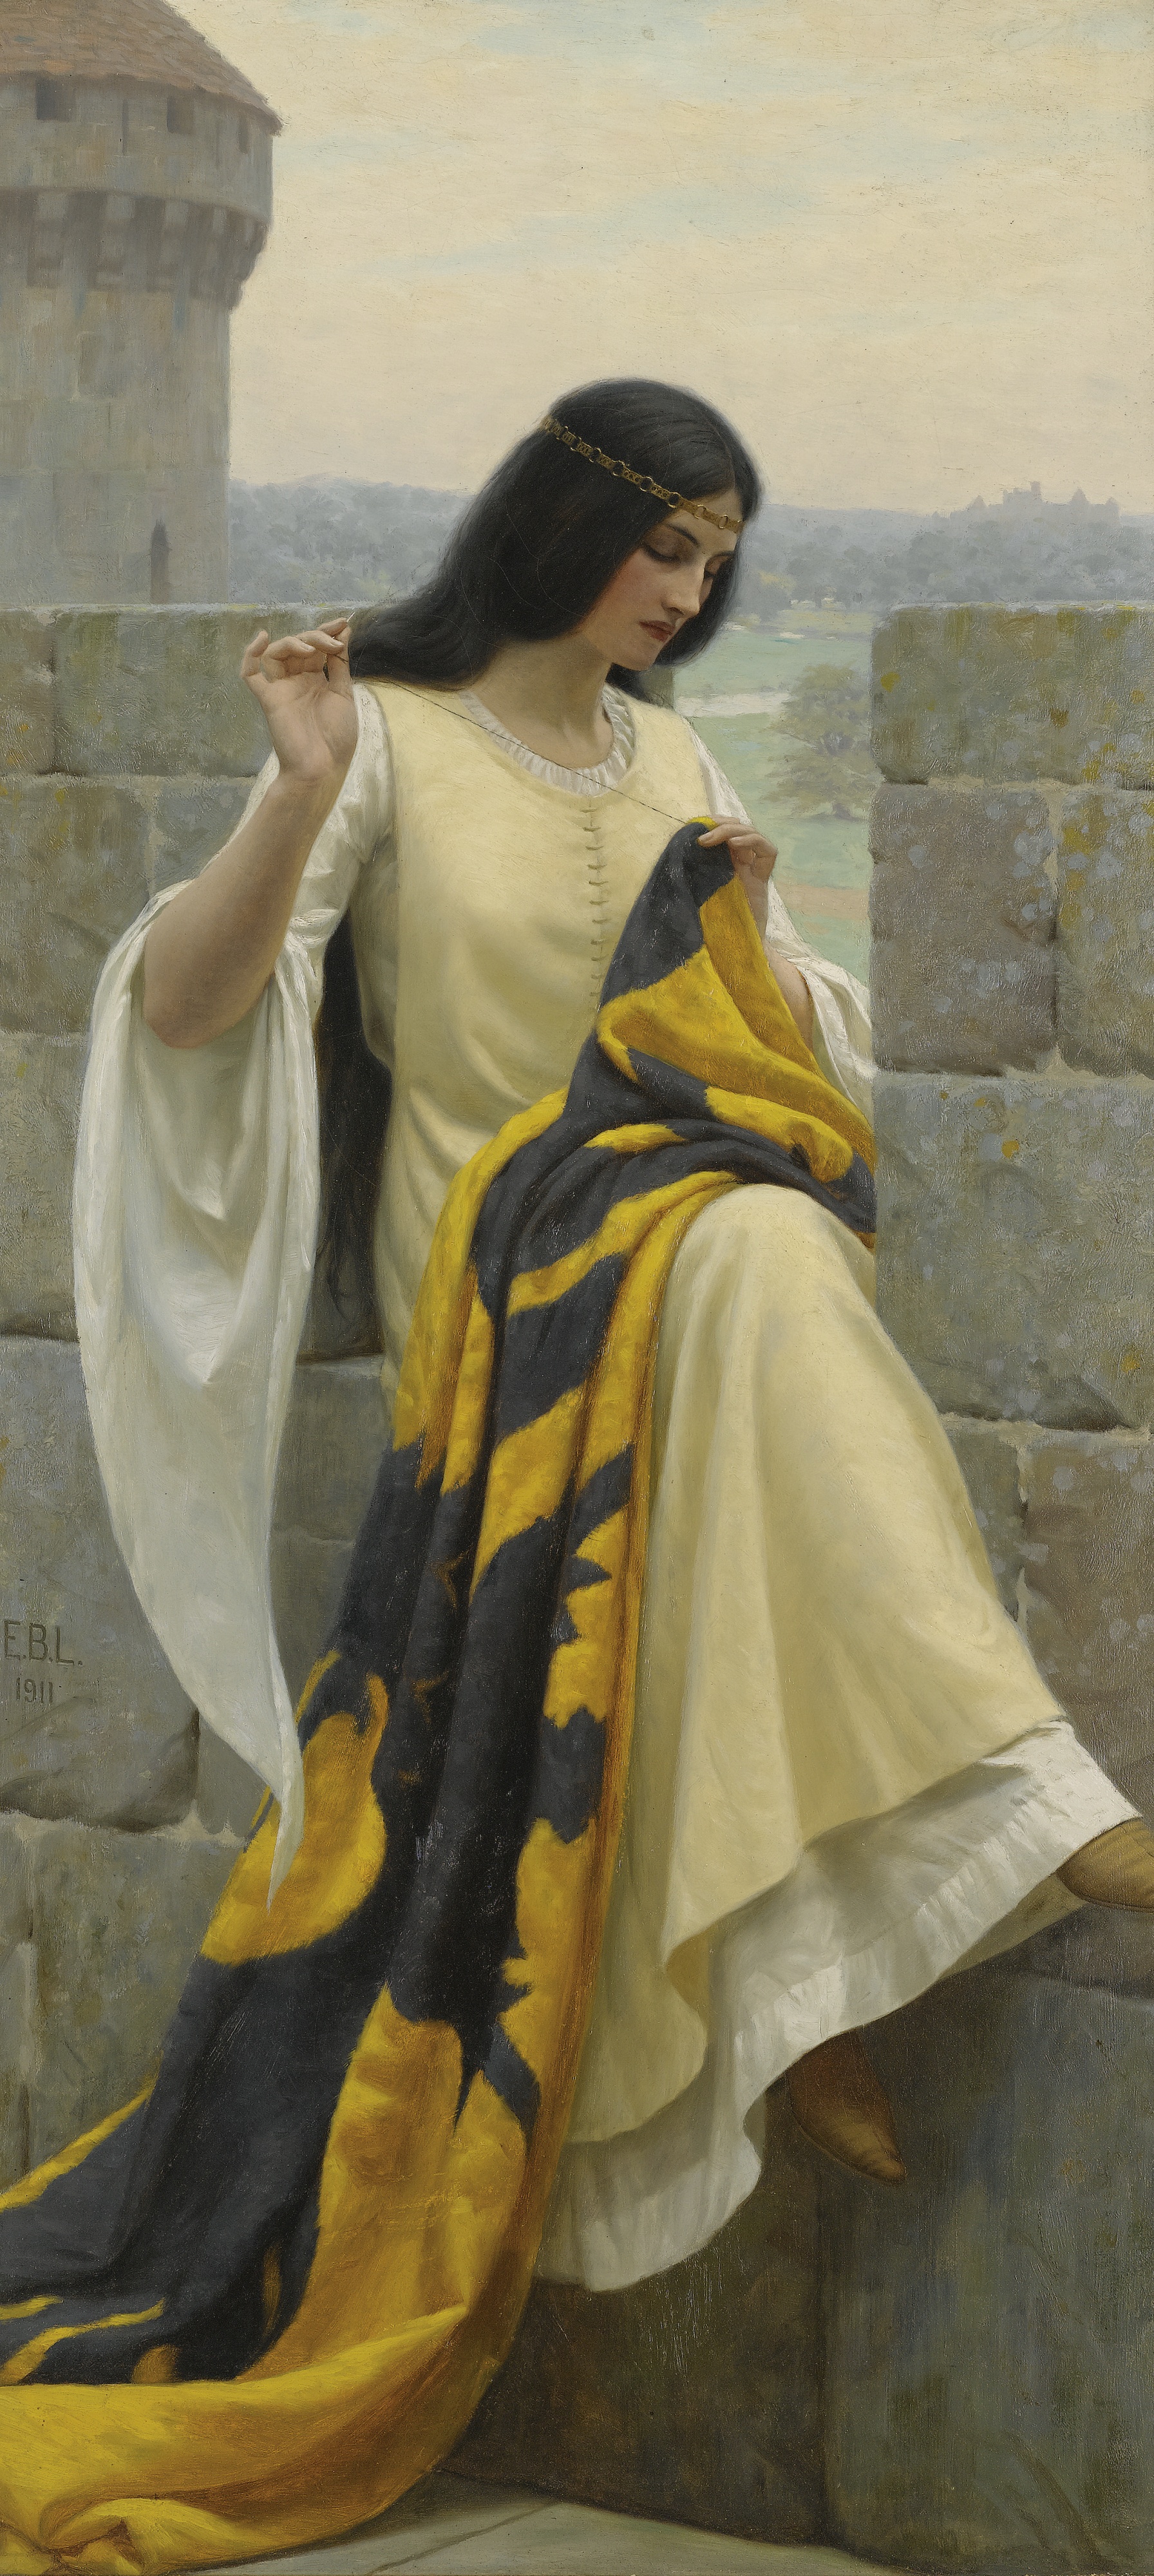 Cucitura dello Stendardo by Edmund Blair Leighton - 1911 - 98 × 44 cm collezione privata